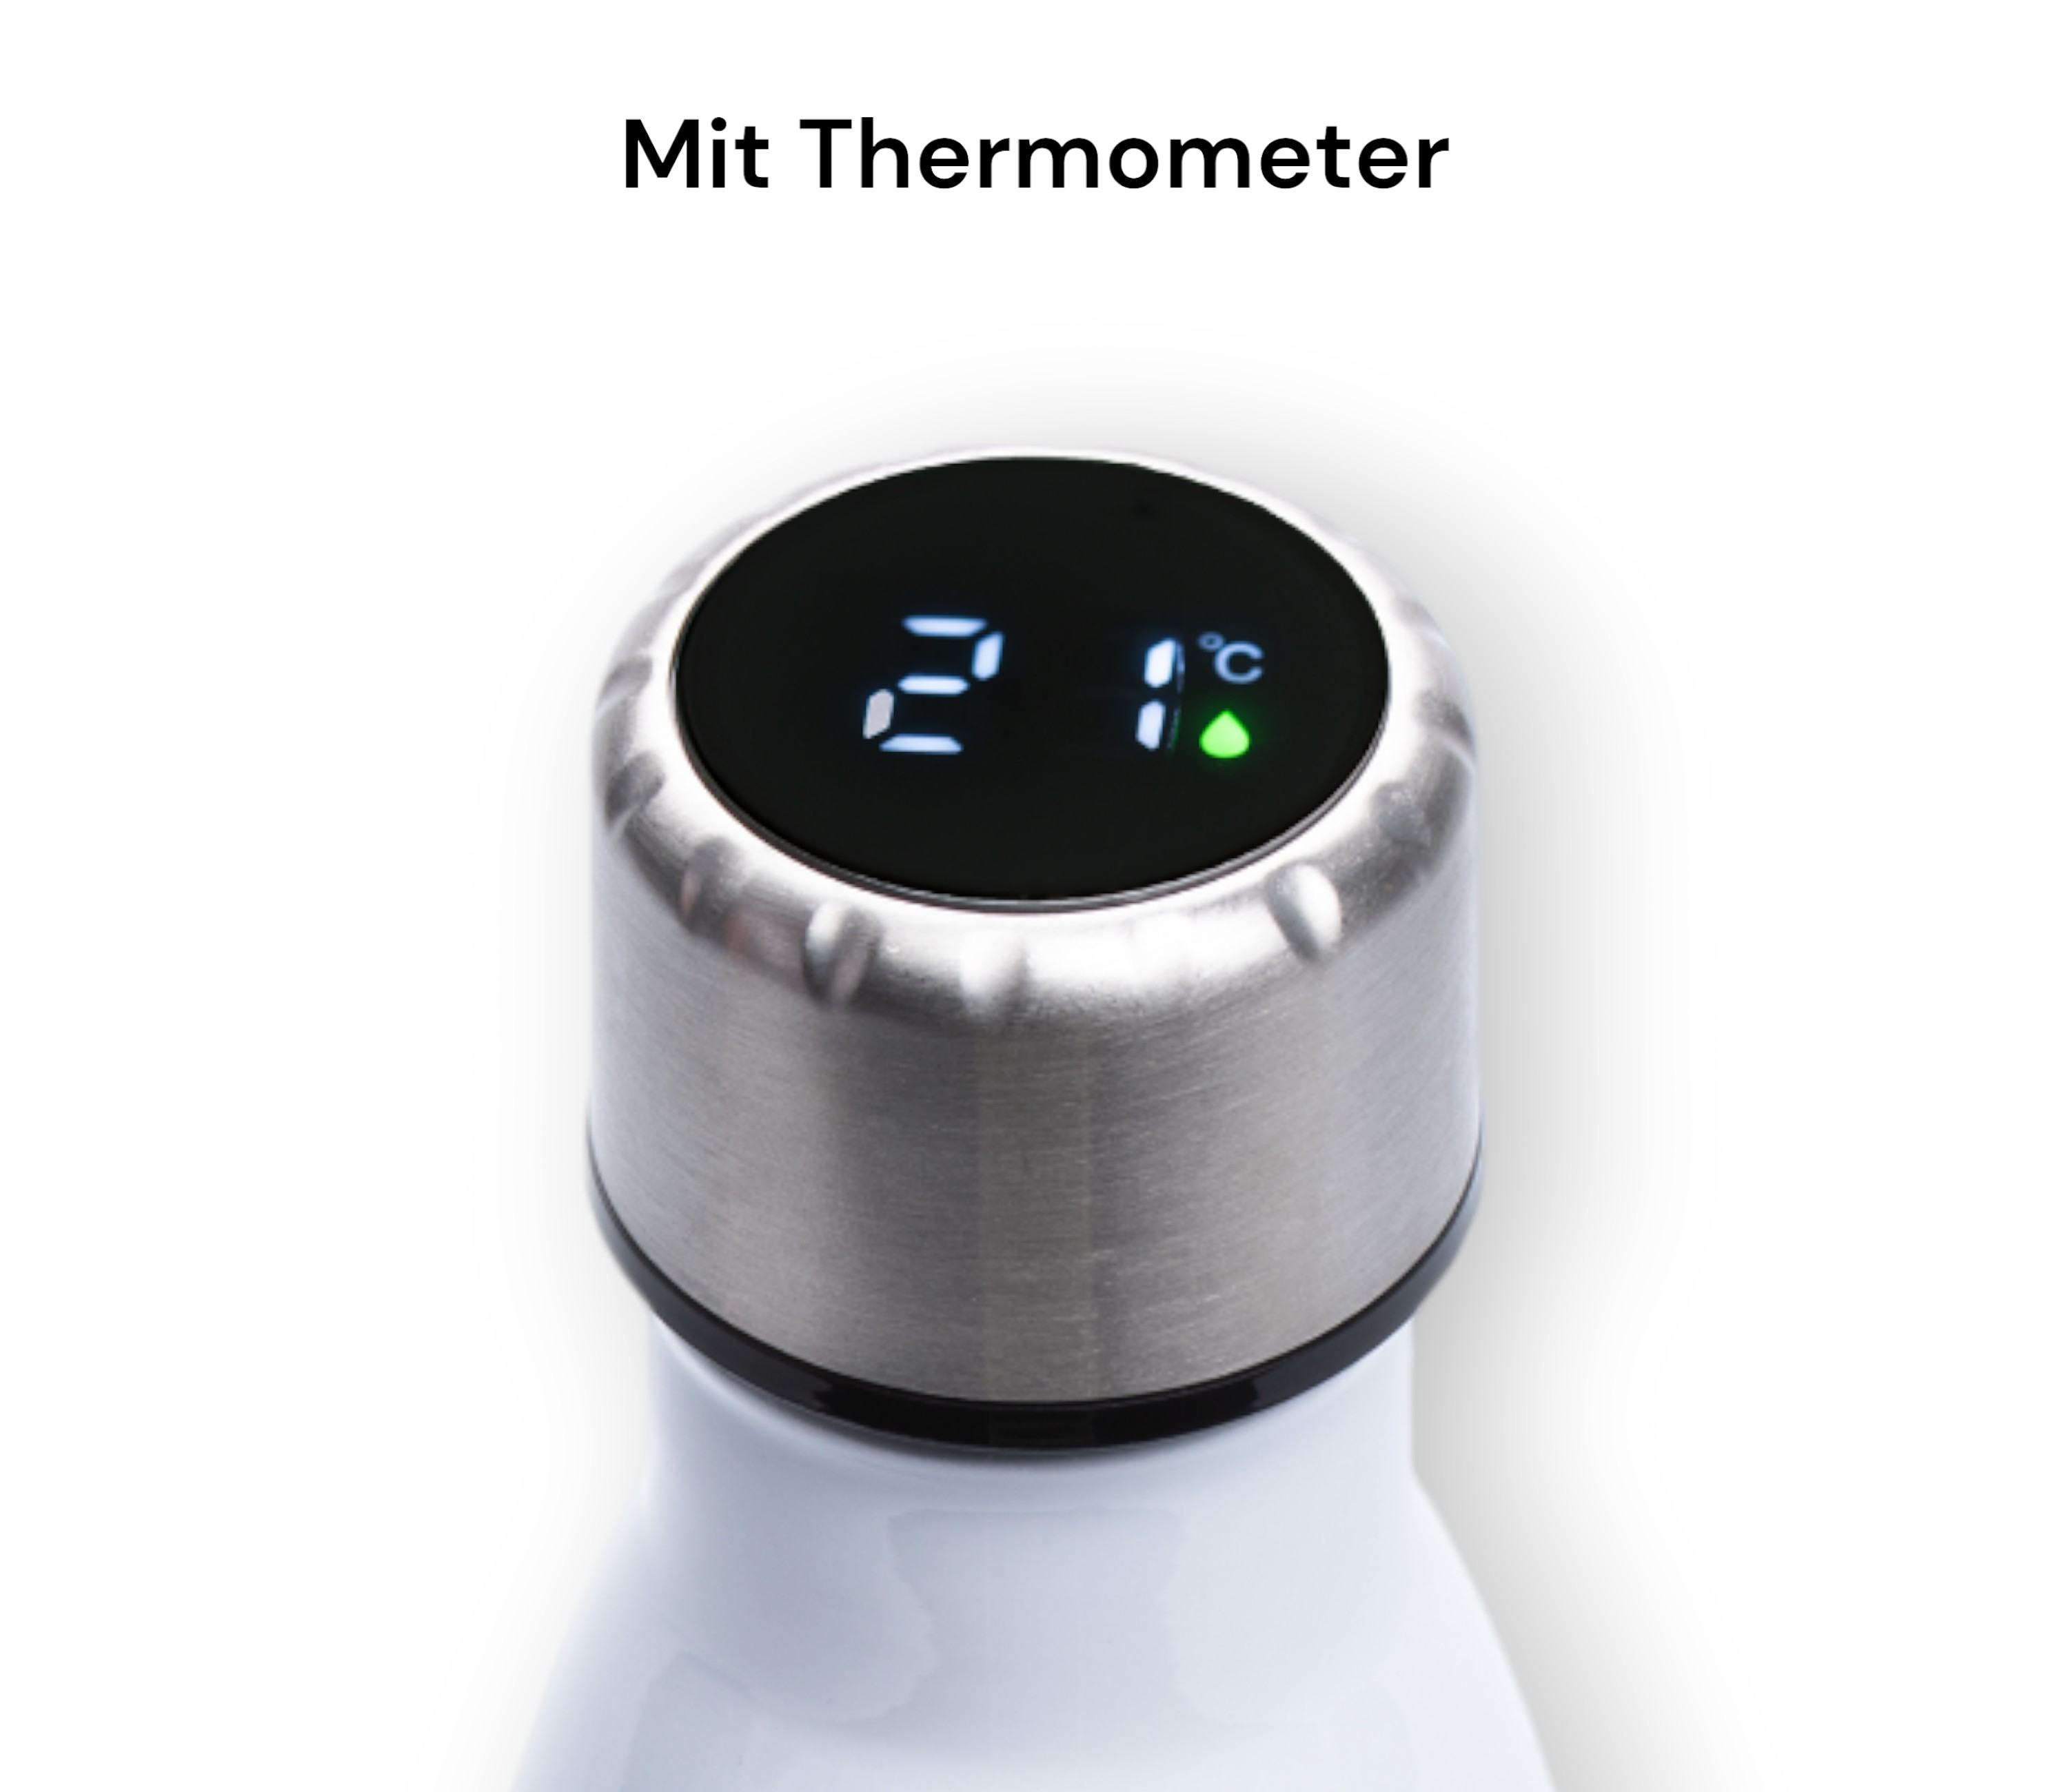 Edelstahl-Flasche mit Thermometer mit Ihrem Logo